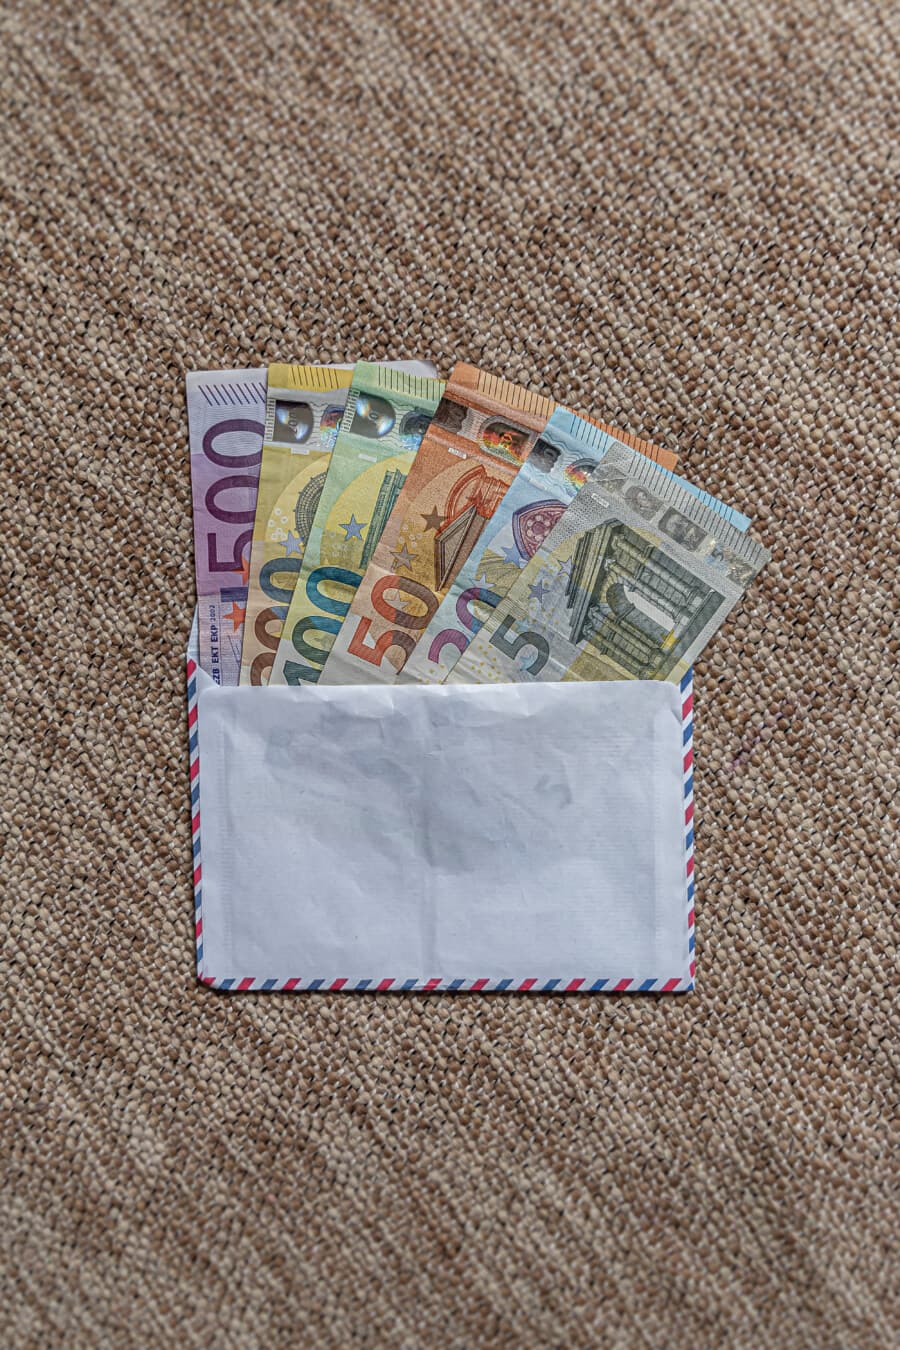 envelope, União Europeia, notas de banco, Euro, dinheiro de papel, poupança, renda, dinheiro, moeda, em dinheiro